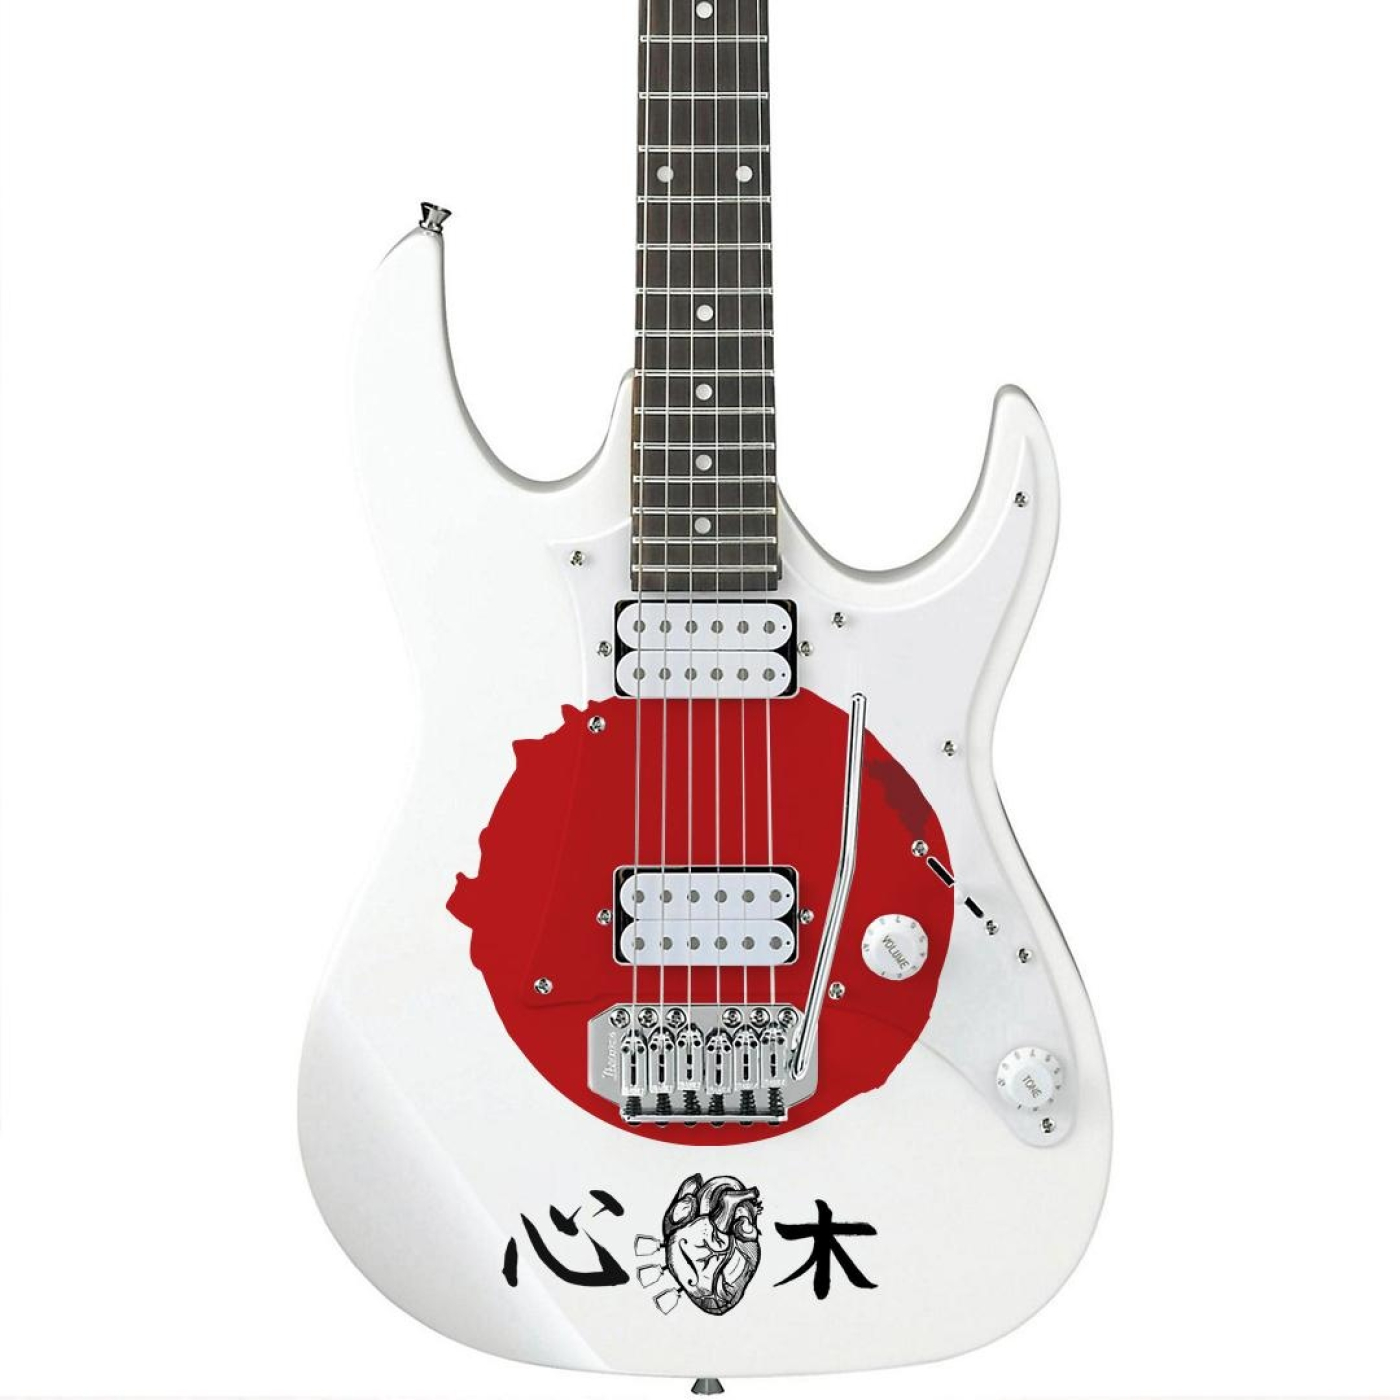 Corazón de Madera – 2×07 – Guitarras Japonesas